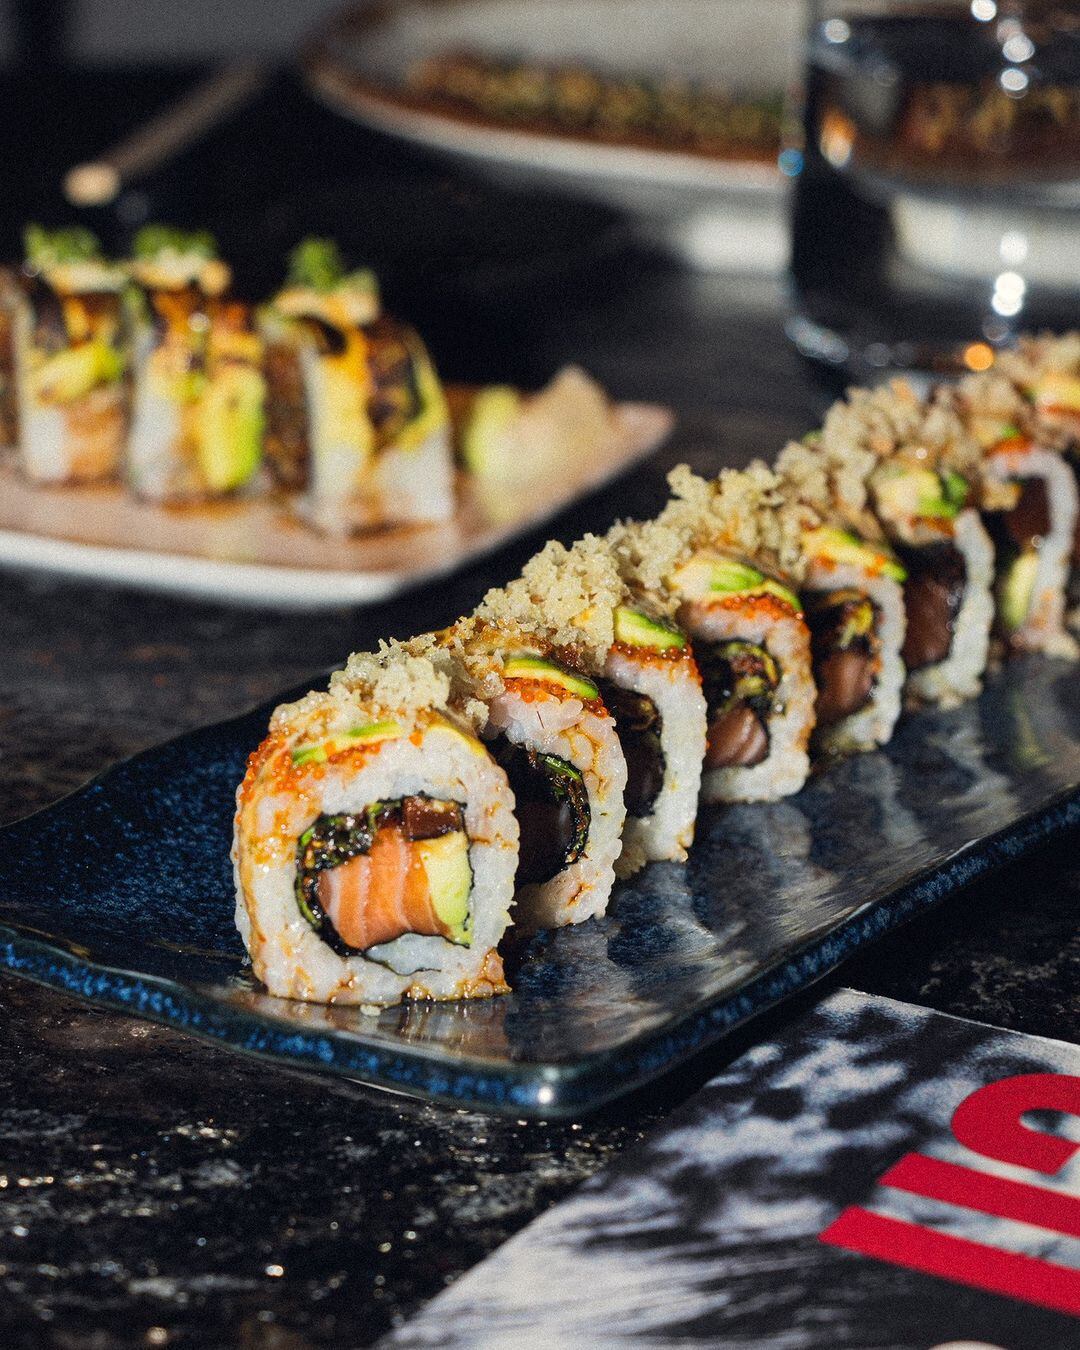 El sushi es un alimento popular en todo el mundo. (Foto: Instagram / senoratanakamx).